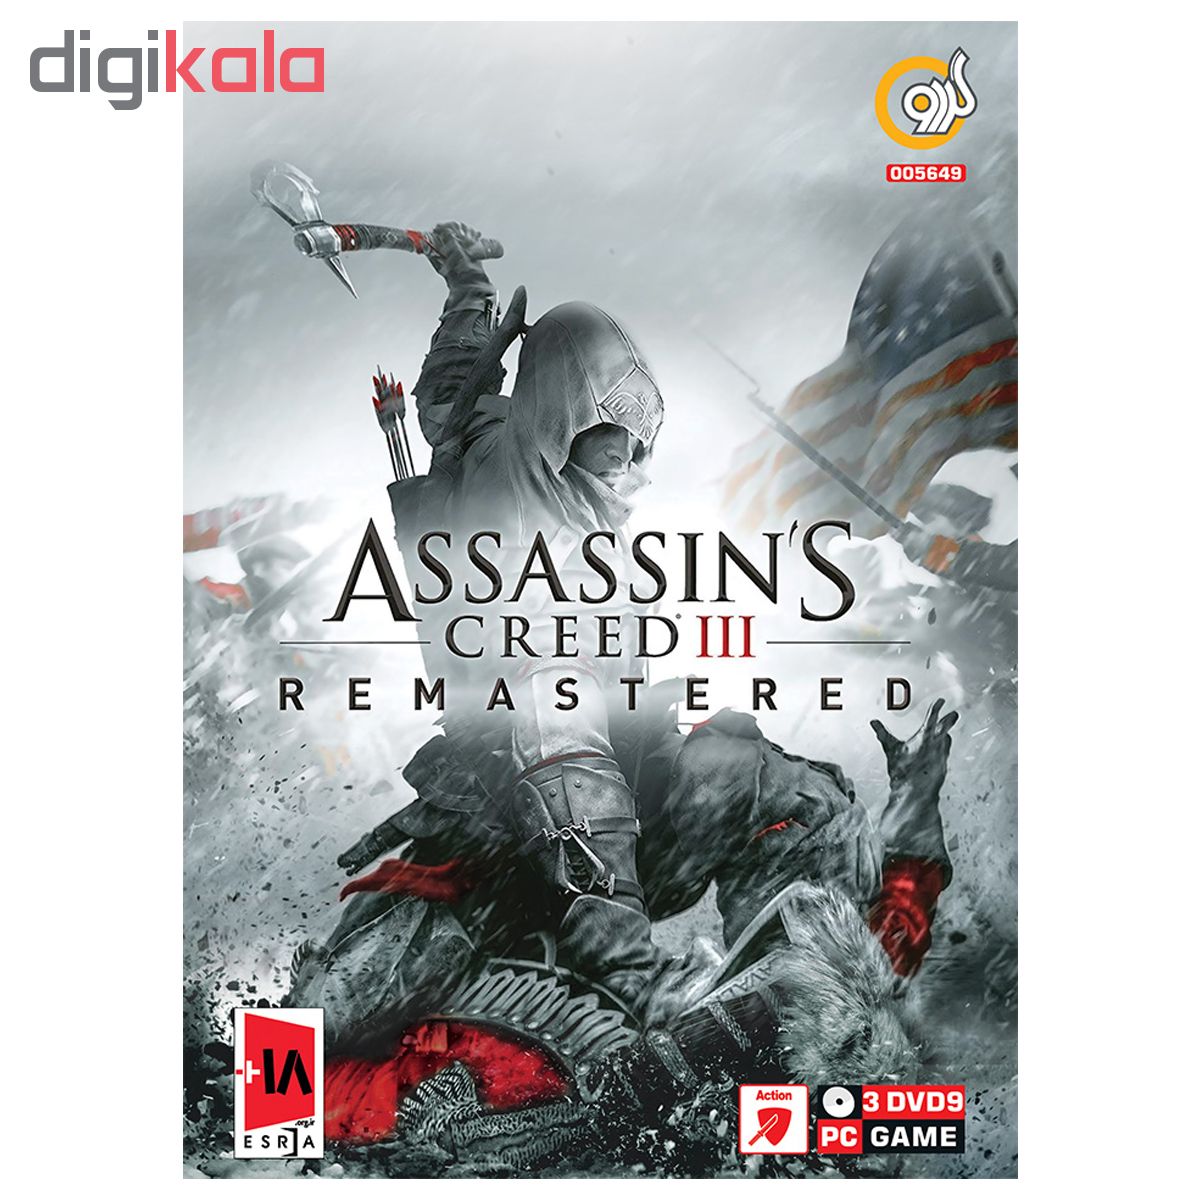 بازی Assassin's Creed III Remastered مخصوص PC نشر گردو